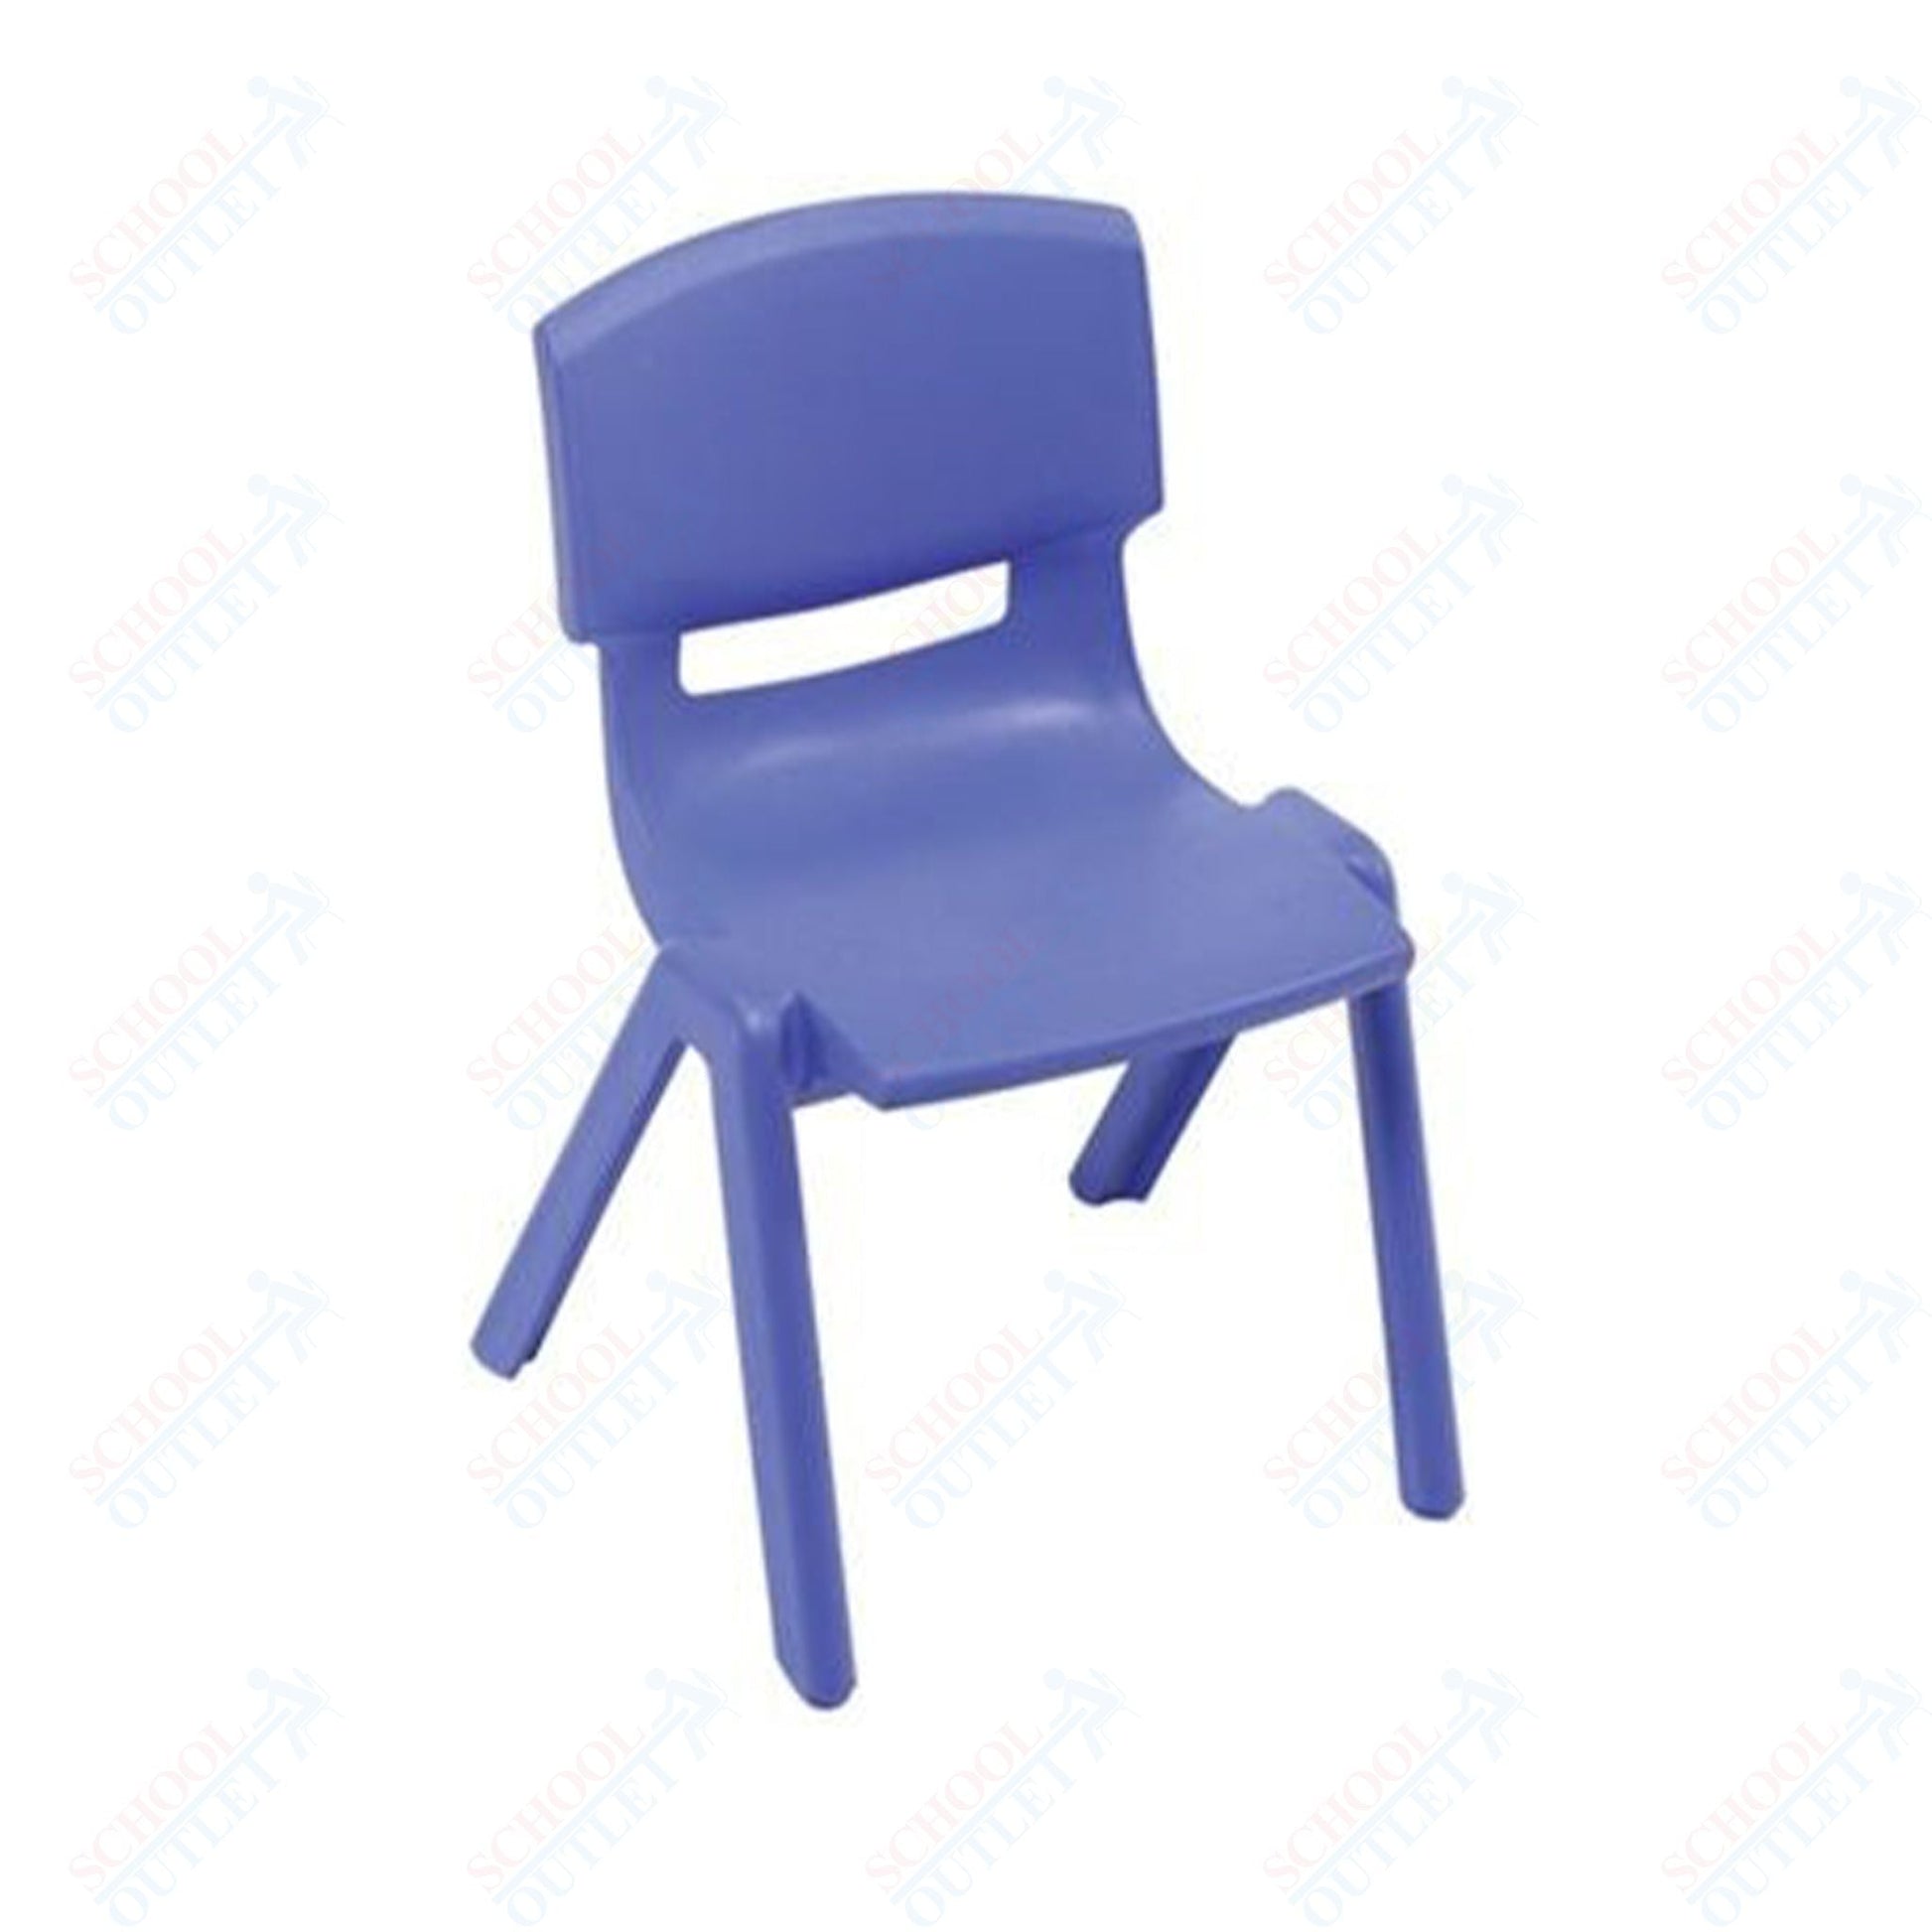 AmTab Classroom School Chair for Kindergarten through 2nd Grade - Stackable - 14.5"W x 15.75"L x 23.25"H - Seat Height 13.5"H (AMT - CLASSCHAIR - 3) - SchoolOutlet